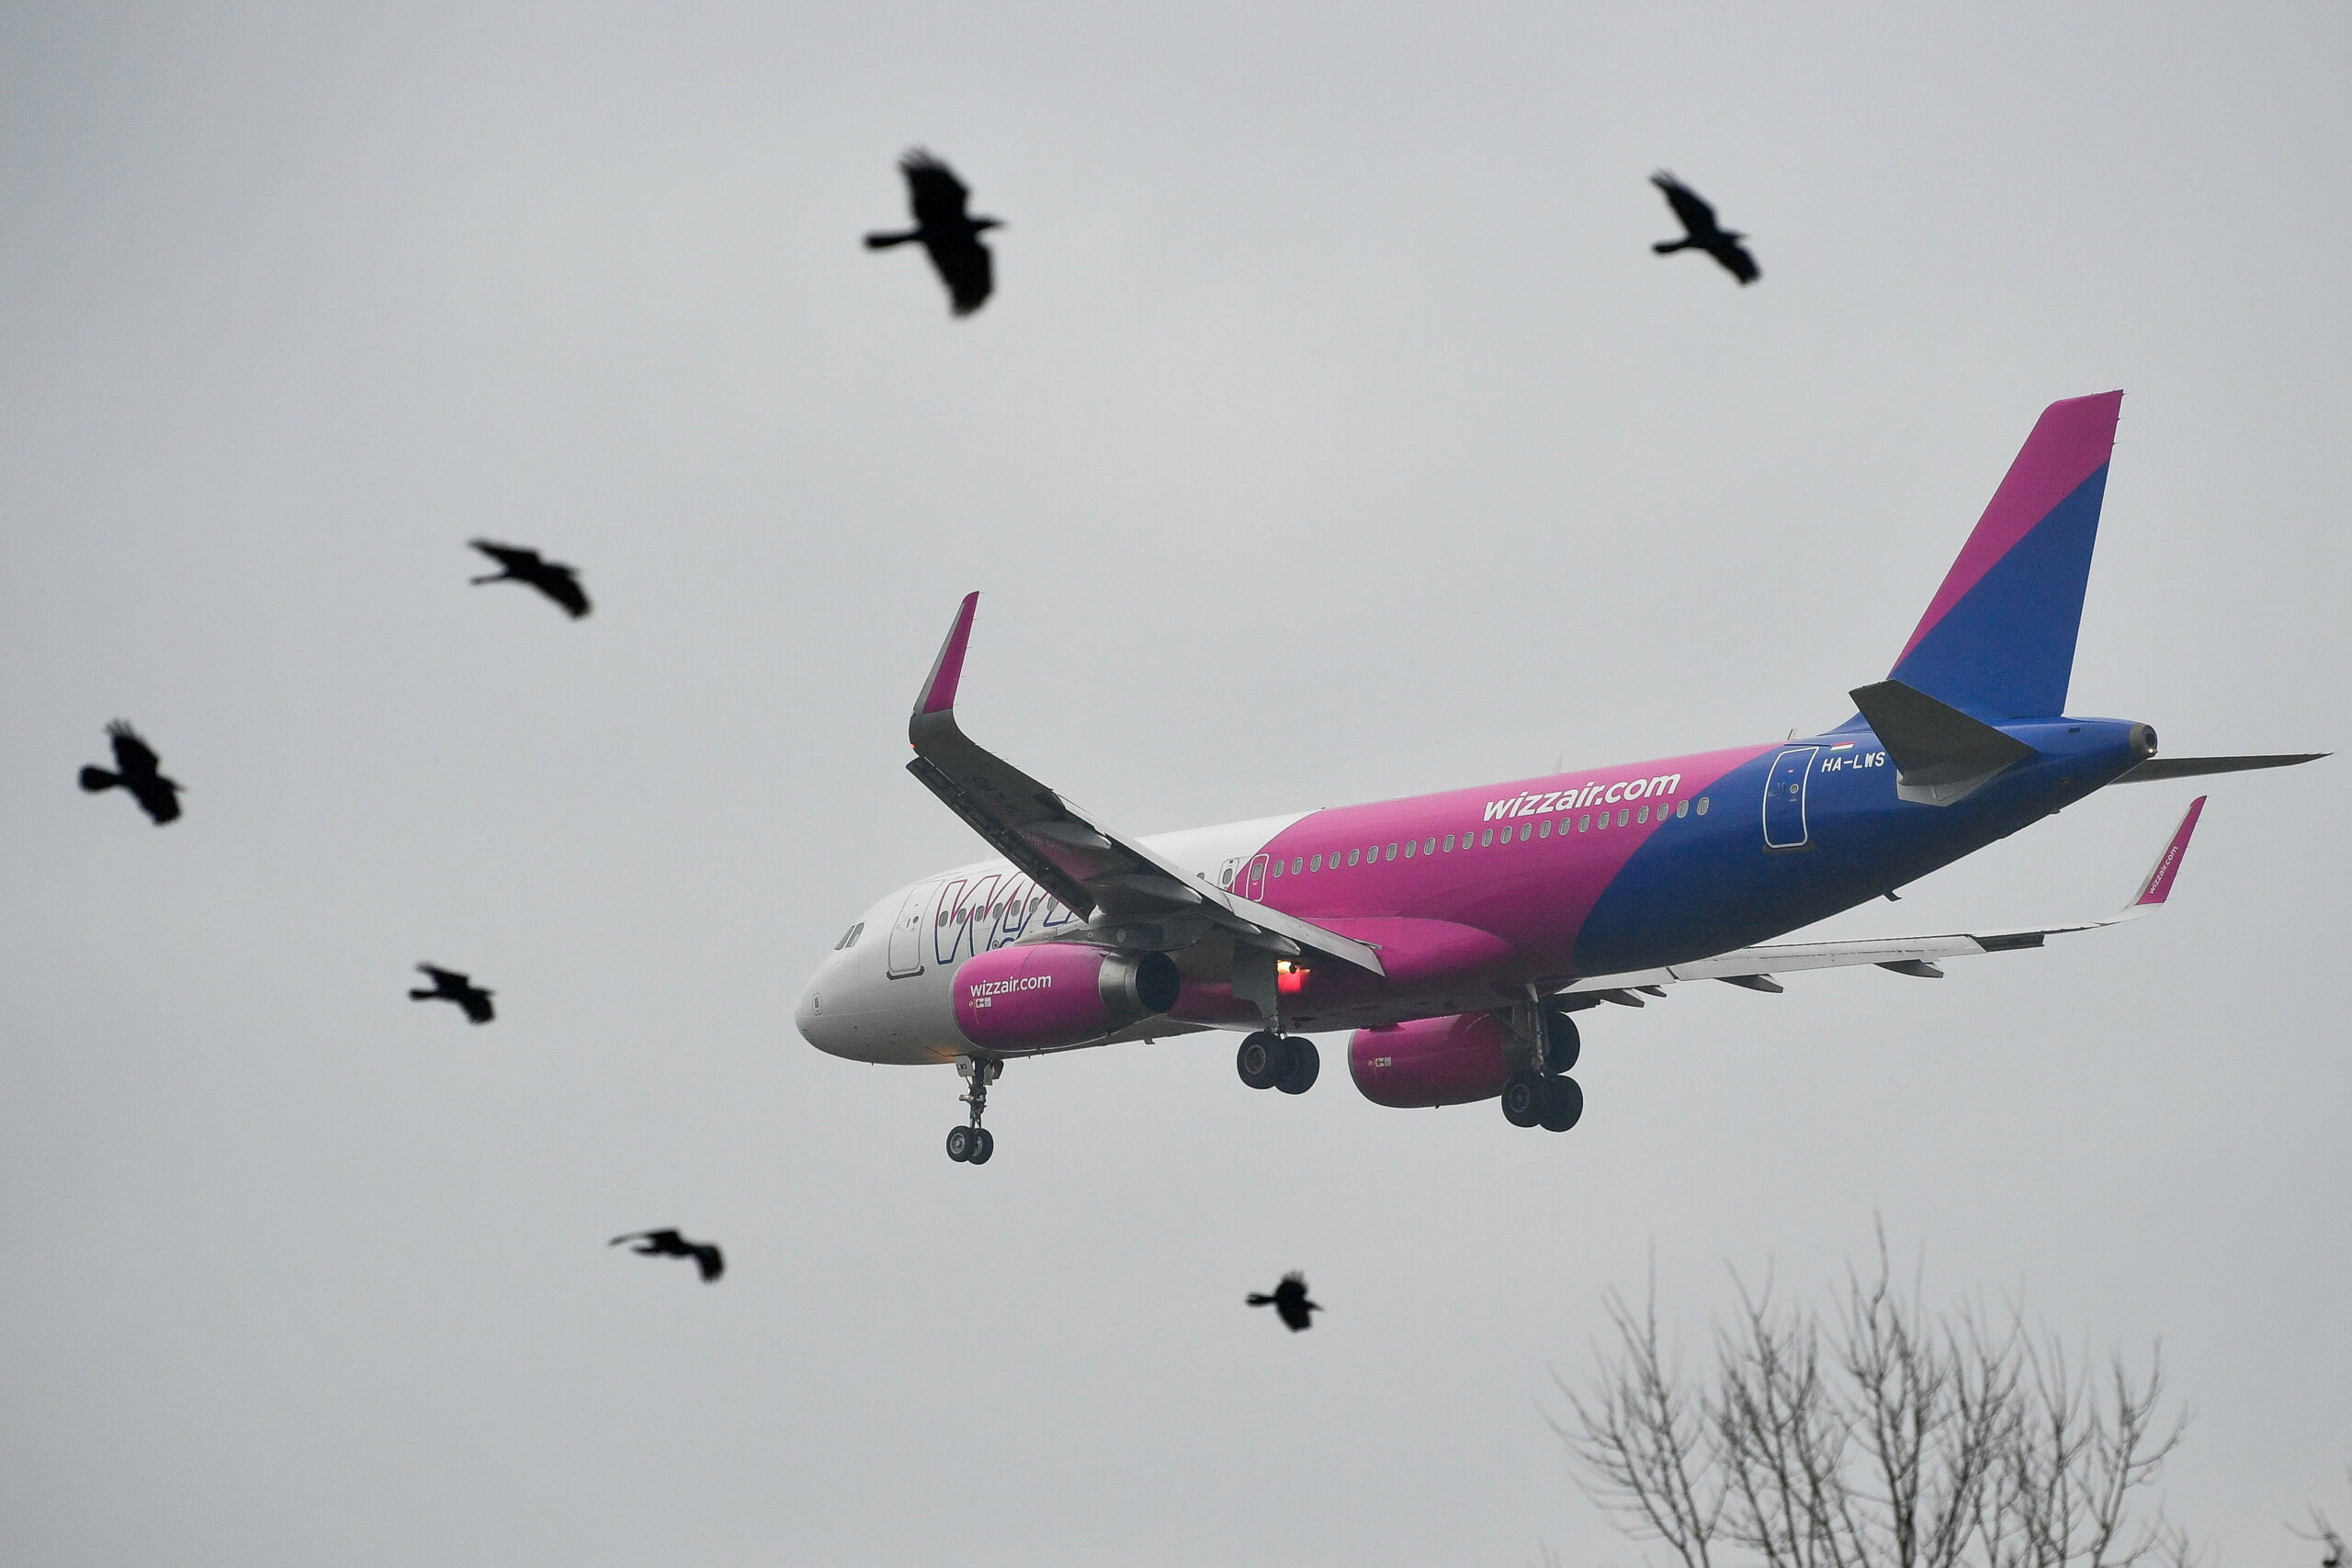 Örökre kitiltották a magyar utast a Wizz Air járatairól, miután verekedett a dzsiddai gépen